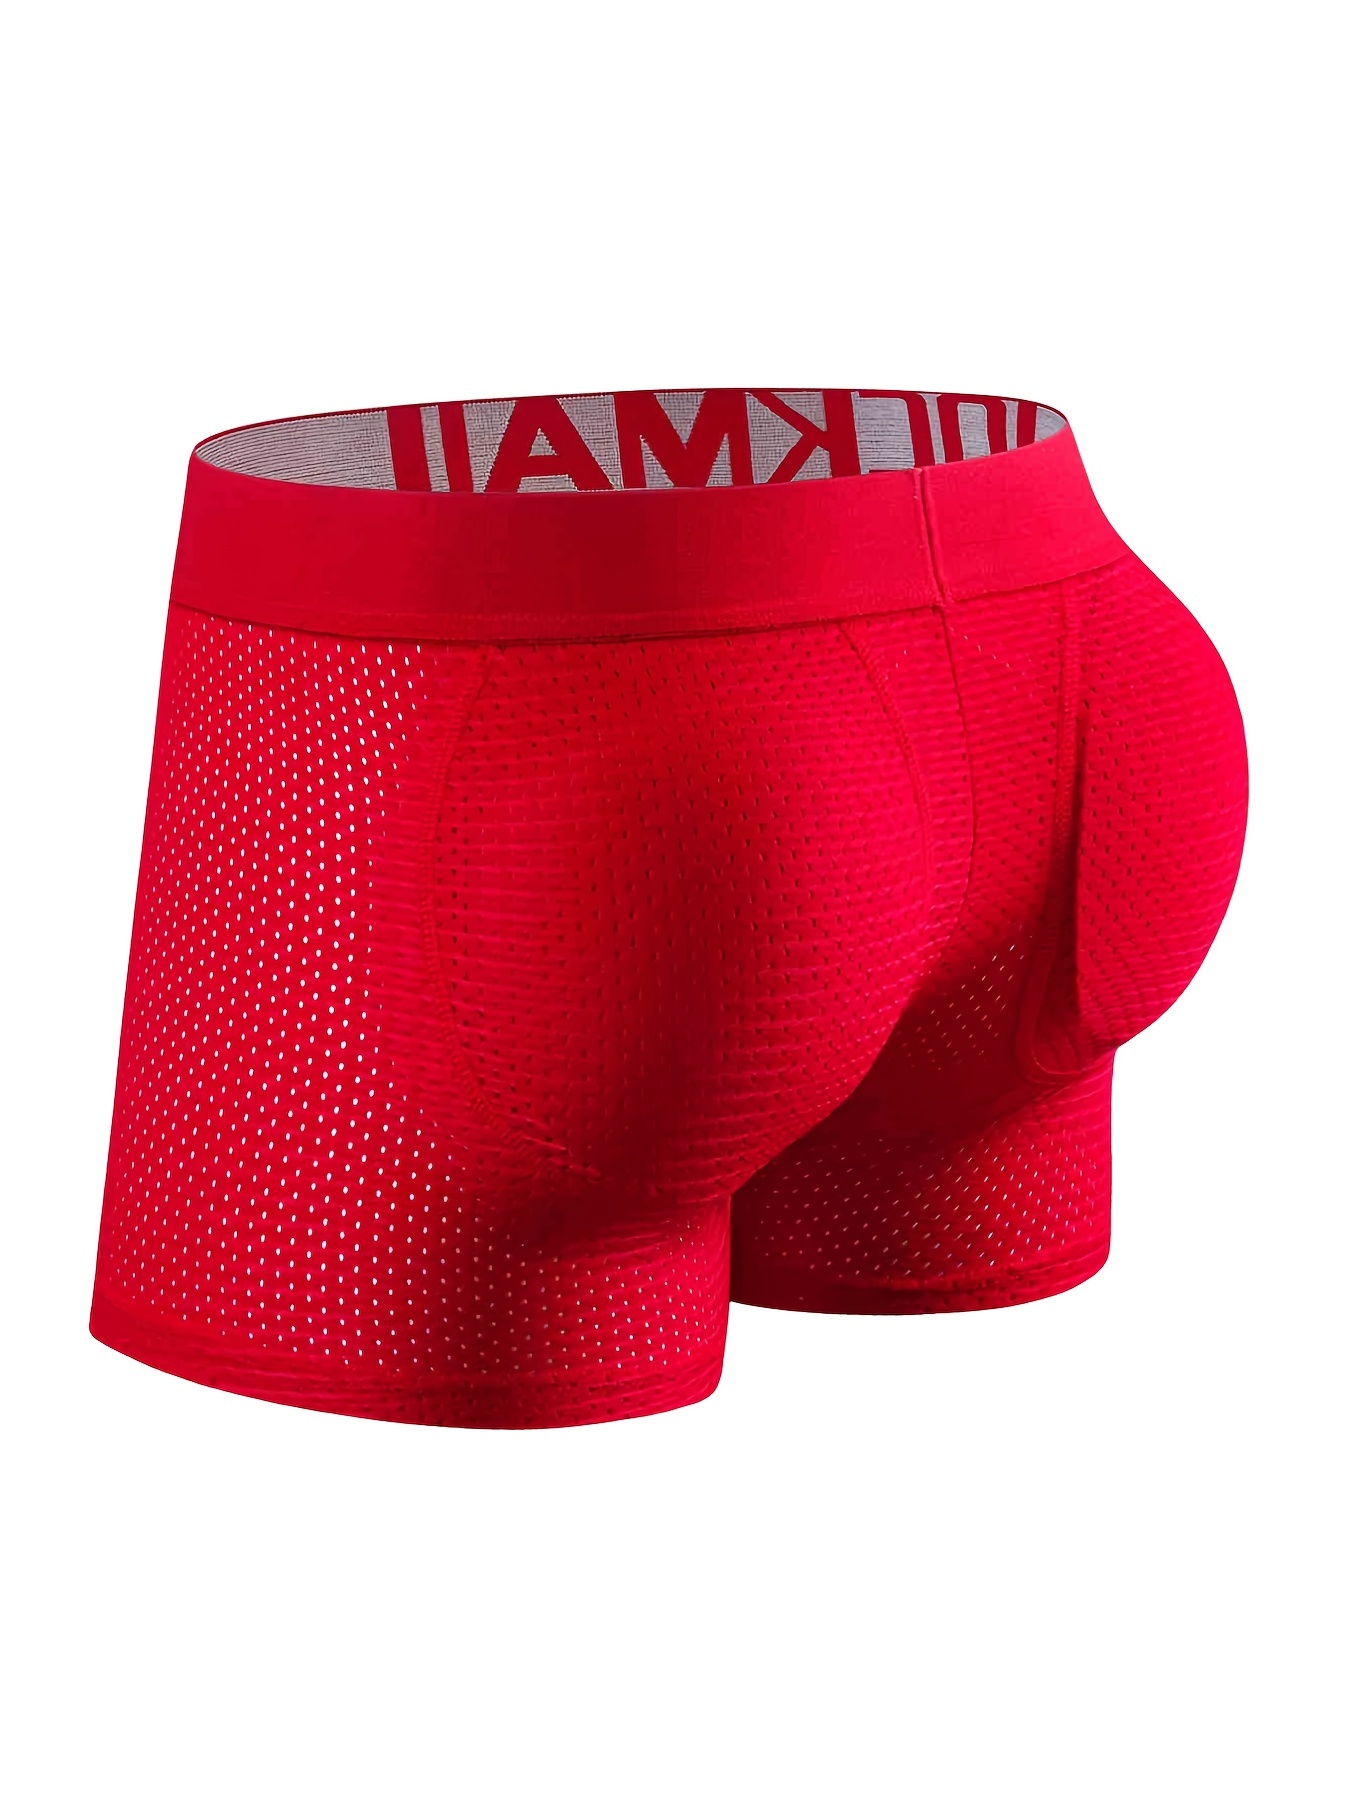 Shop Bum Underwear Men Xxl online - Nov 2023